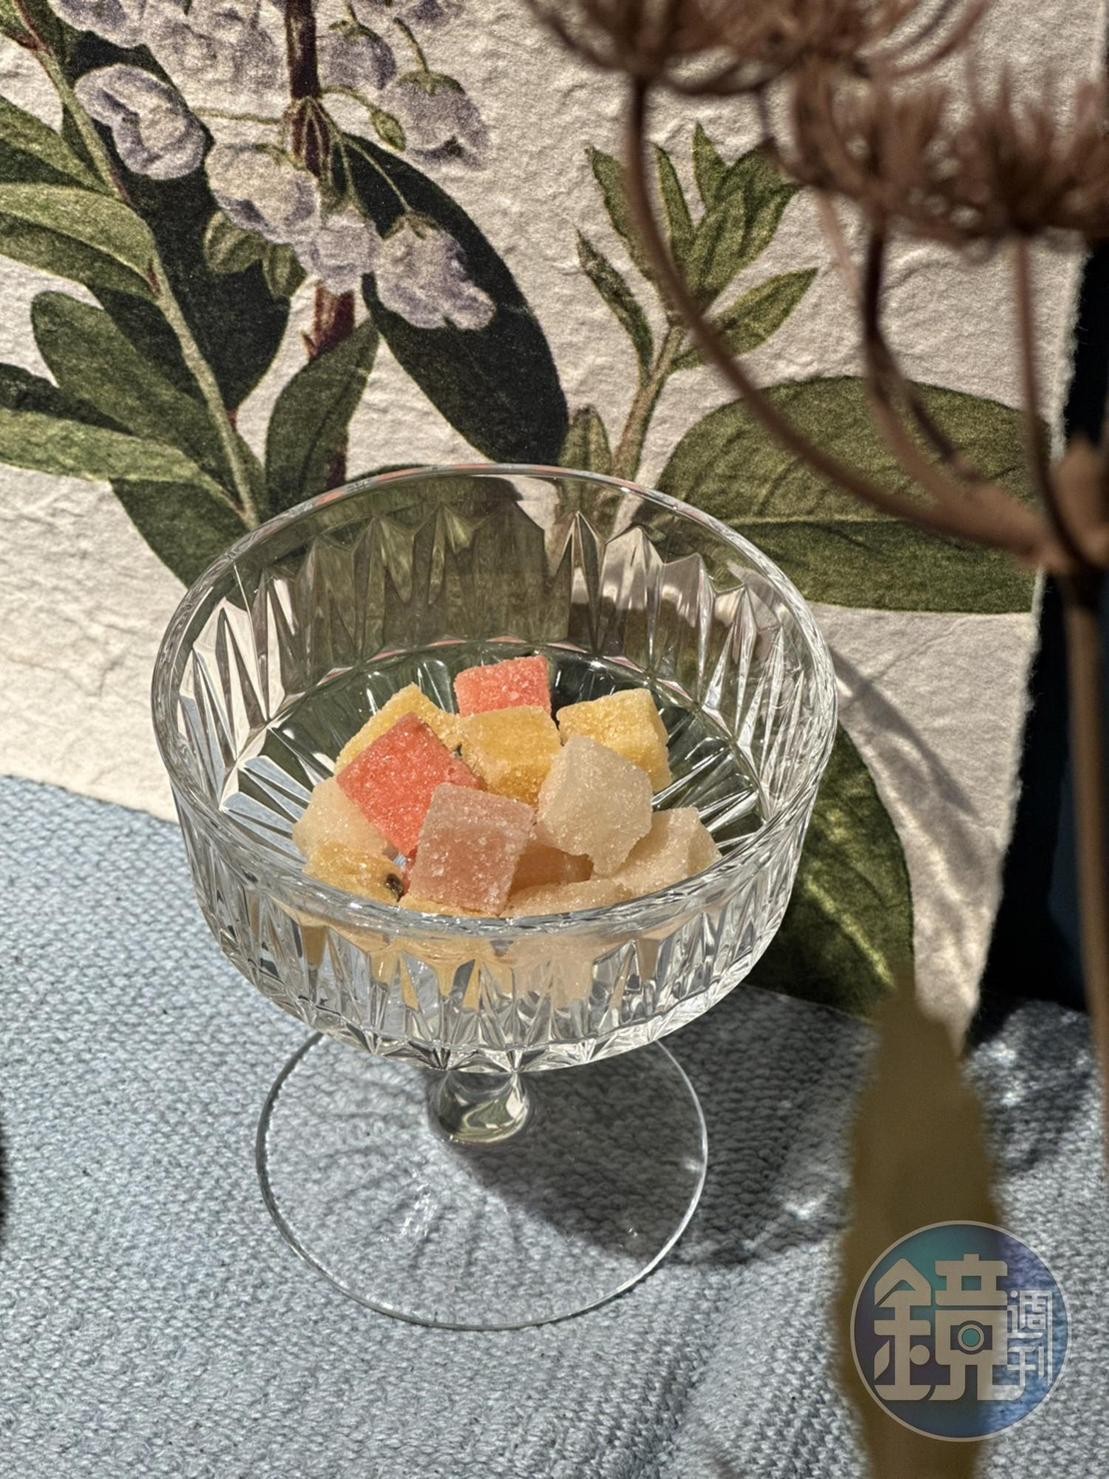 四種口味的「法式水果軟糖」是深法在喜餅、禮盒中才會出現的品項。